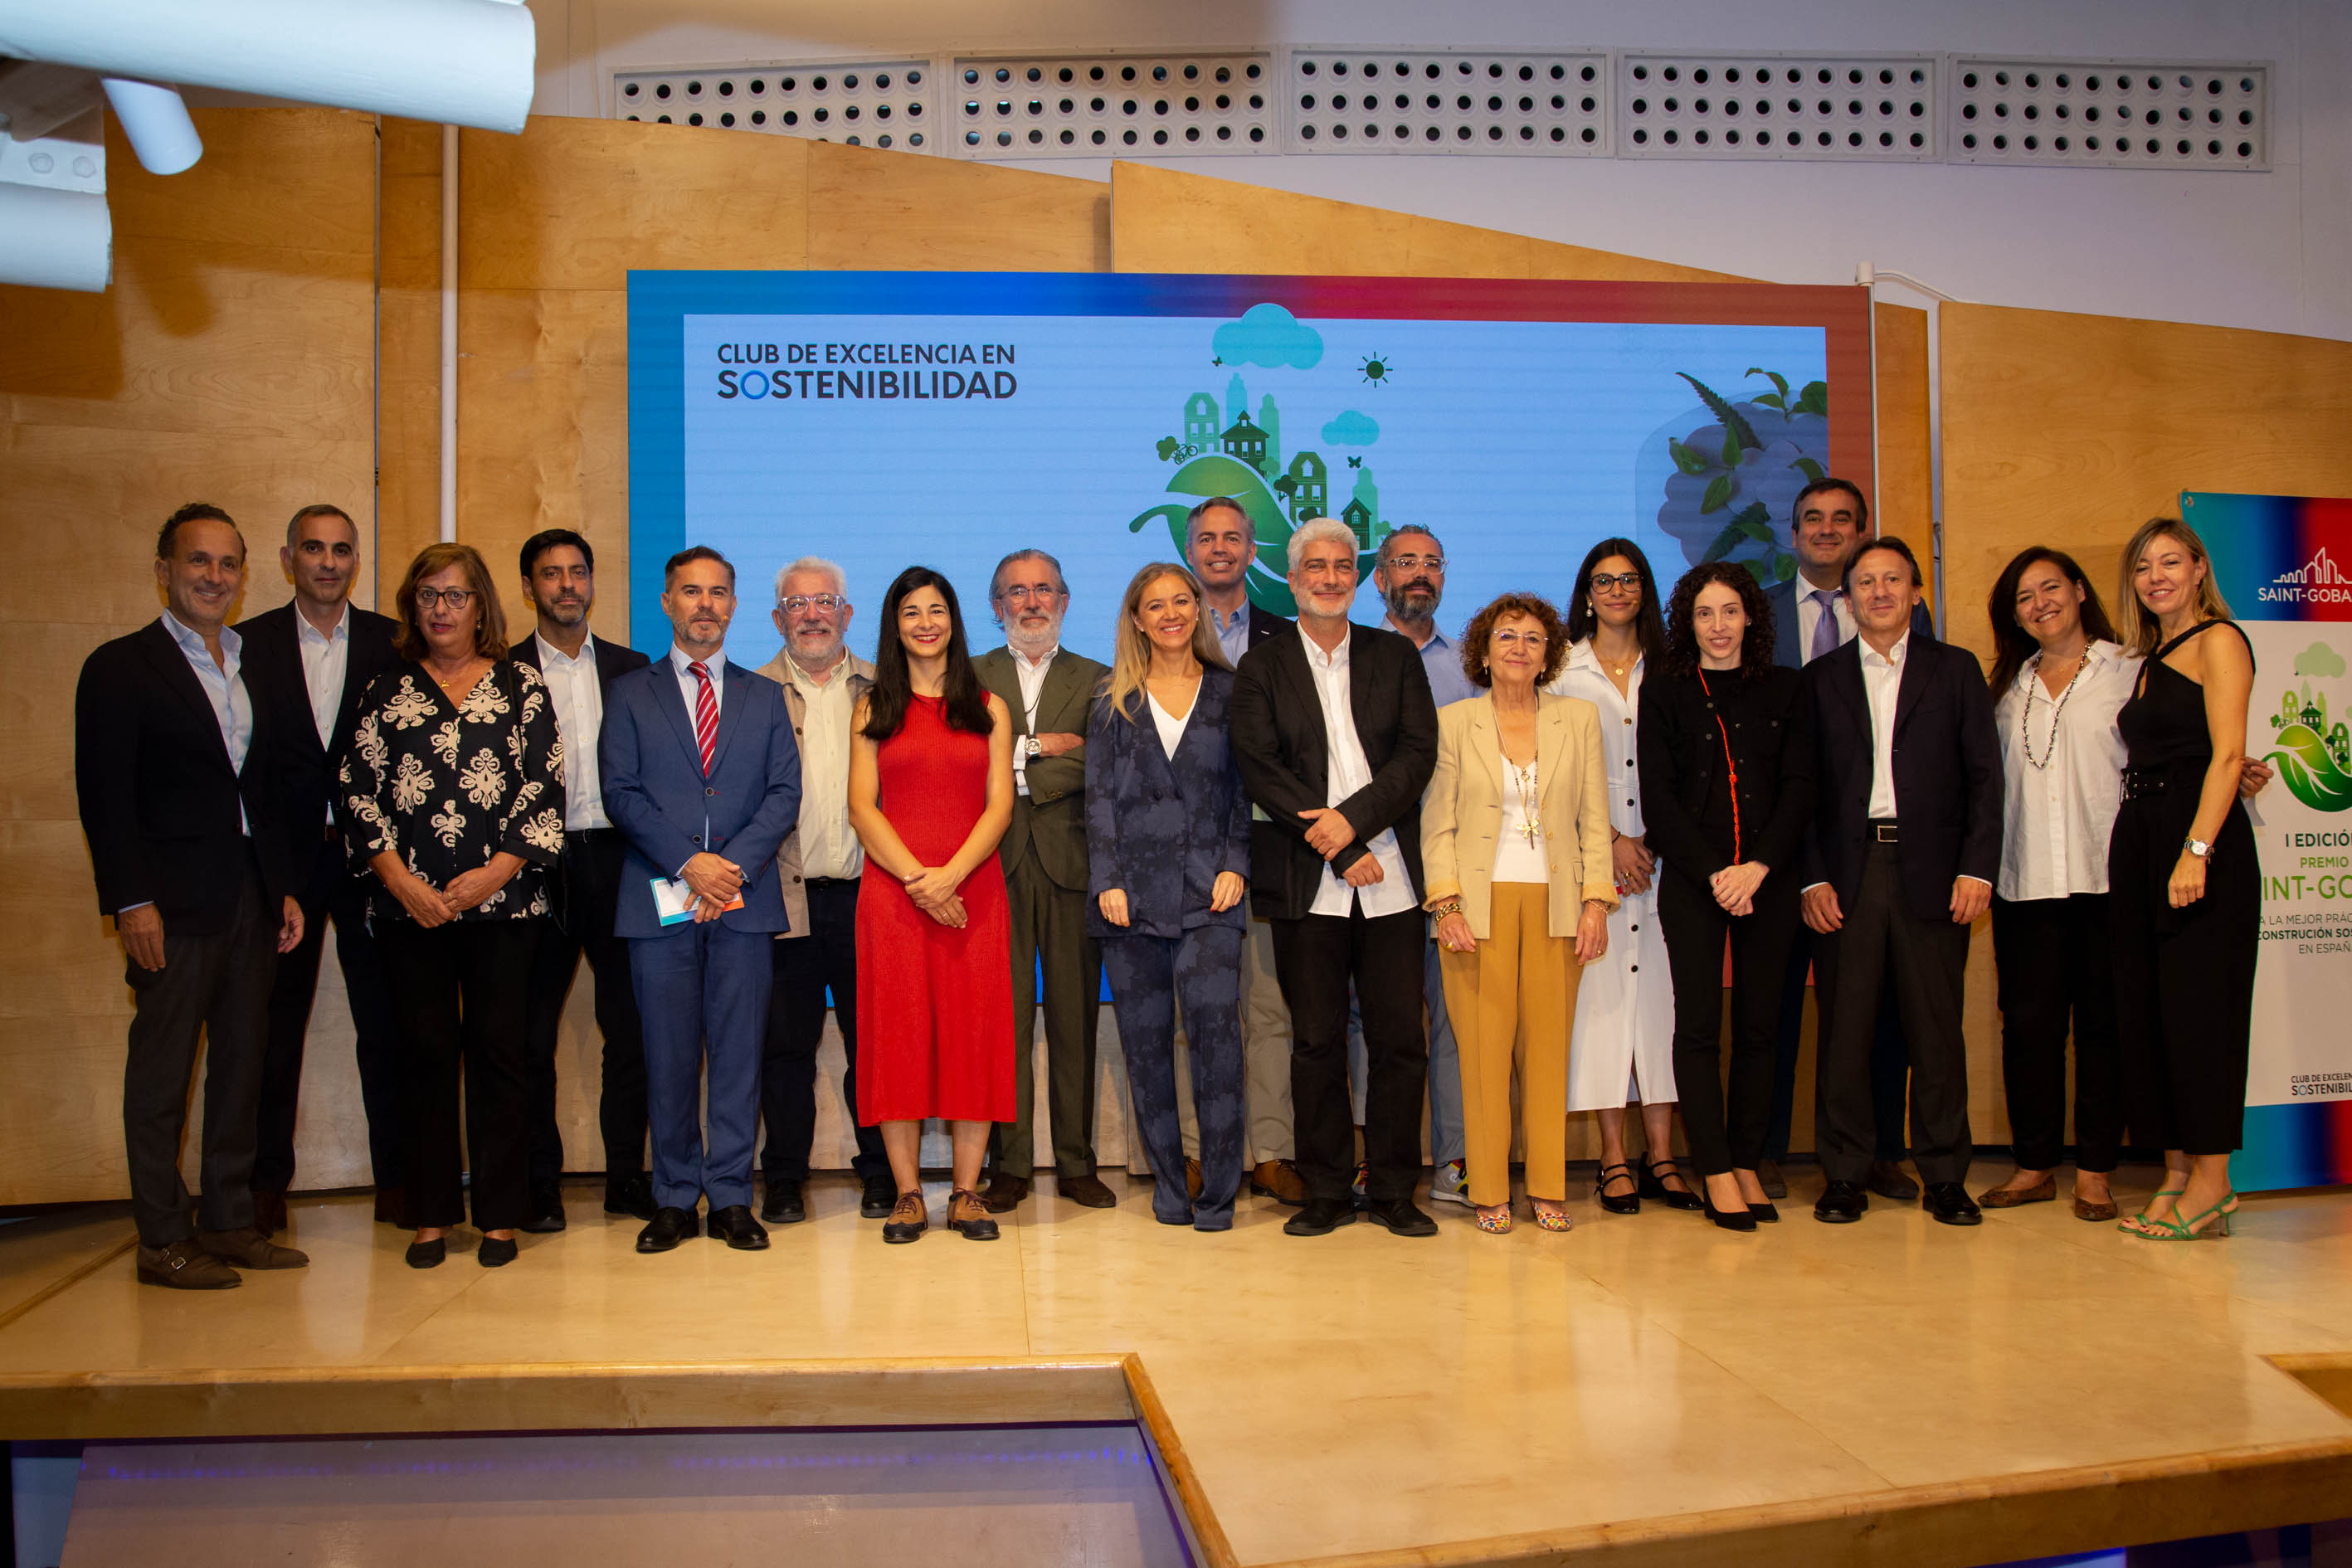 Saint-Gobain premia las mejores prácticas de construcción sostenible en España